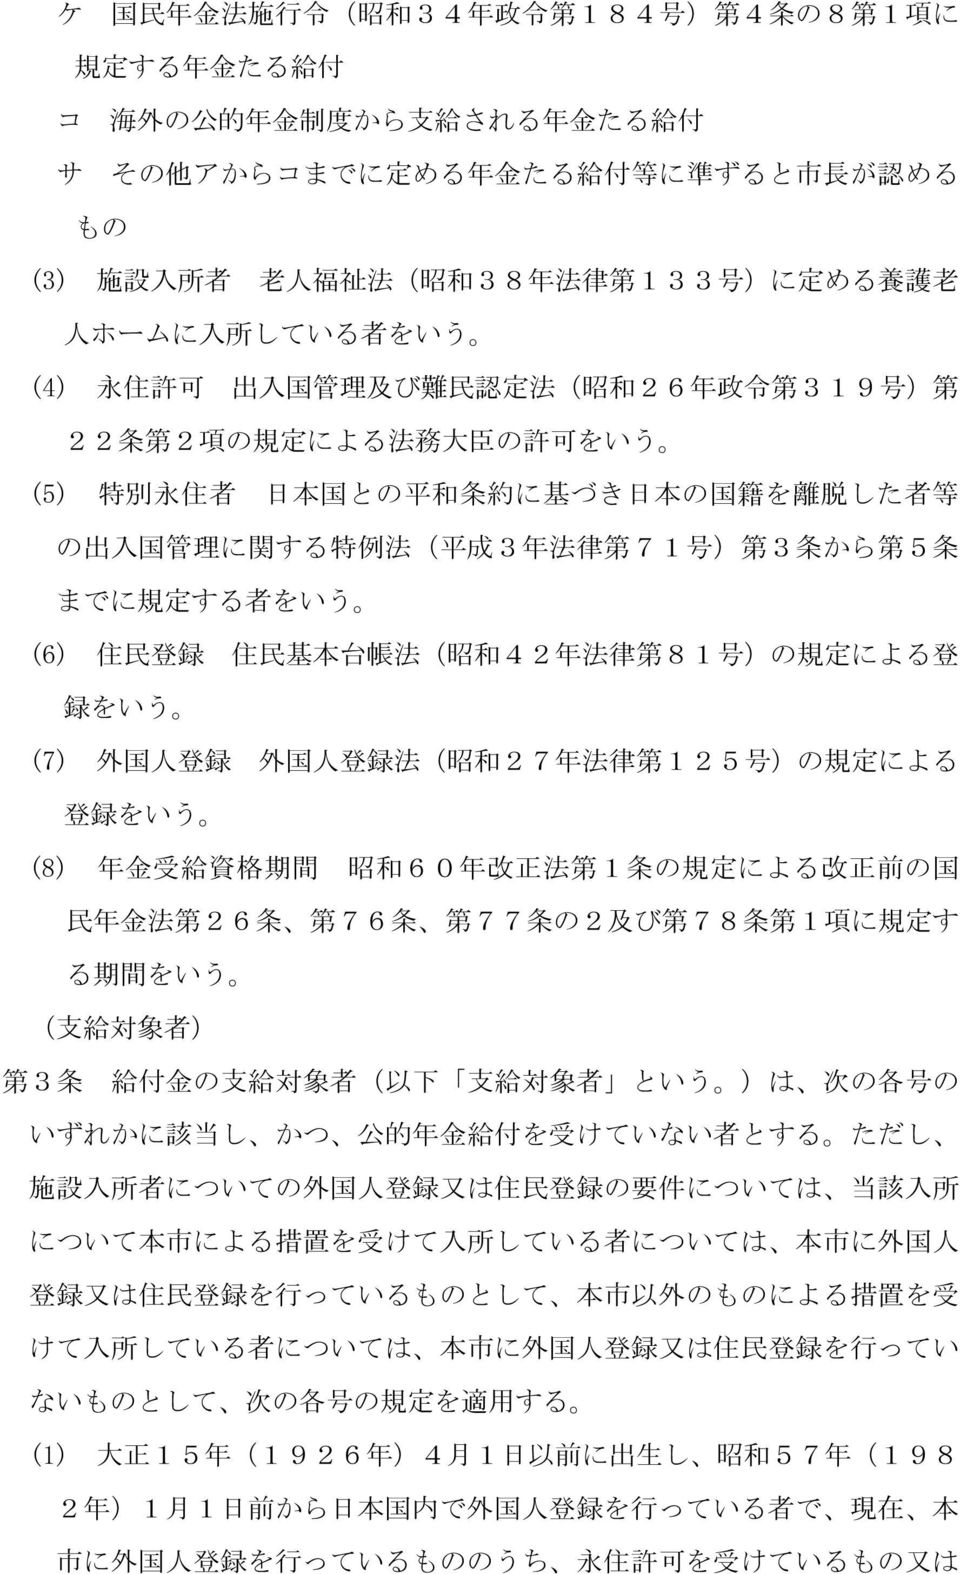 日 本 の 国 籍 を 離 脱 した 者 等 の 出 入 国 管 理 に 関 する 特 例 法 ( 平 成 3 年 法 律 第 71 号 ) 第 3 条 から 第 5 条 までに 規 定 する 者 をいう (6) 住 民 登 録 住 民 基 本 台 帳 法 ( 昭 和 42 年 法 律 第 81 号 )の 規 定 による 登 録 をいう (7) 外 国 人 登 録 外 国 人 登 録 法 ( 昭